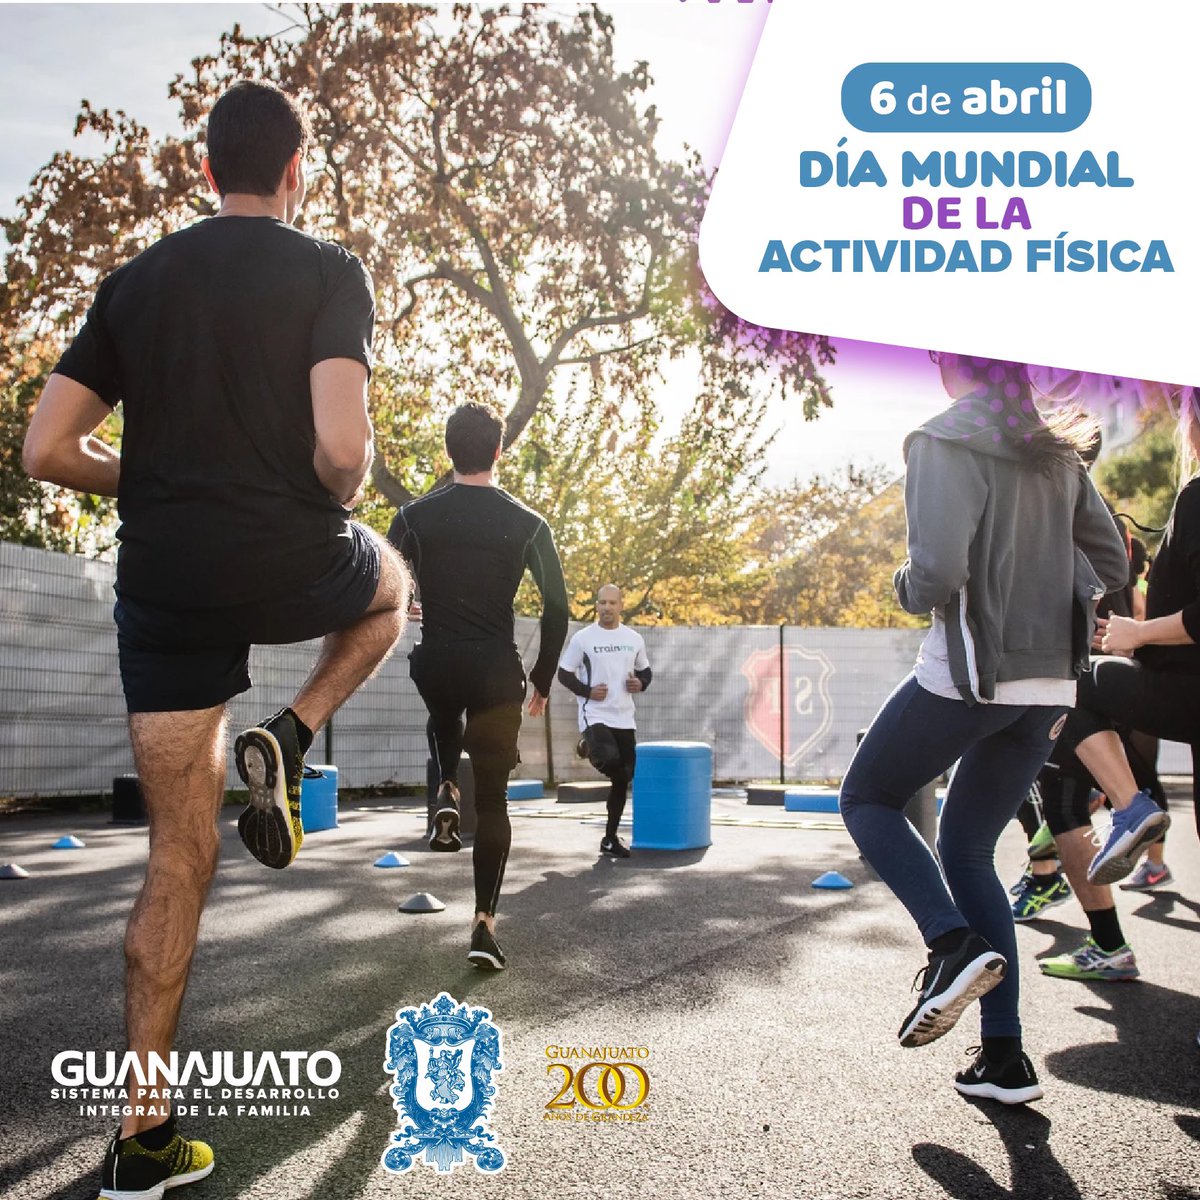 El 6 de abril se conmemora el #DíaMundialDeLaActividadFísica 🏃🏾‍♀️, con el objetivo  de sensibilizar a la población sobre la importancia de practicar actividad física de manera regular y sistemática para mejorar la salud y adquirir buenos hábitos de vida.